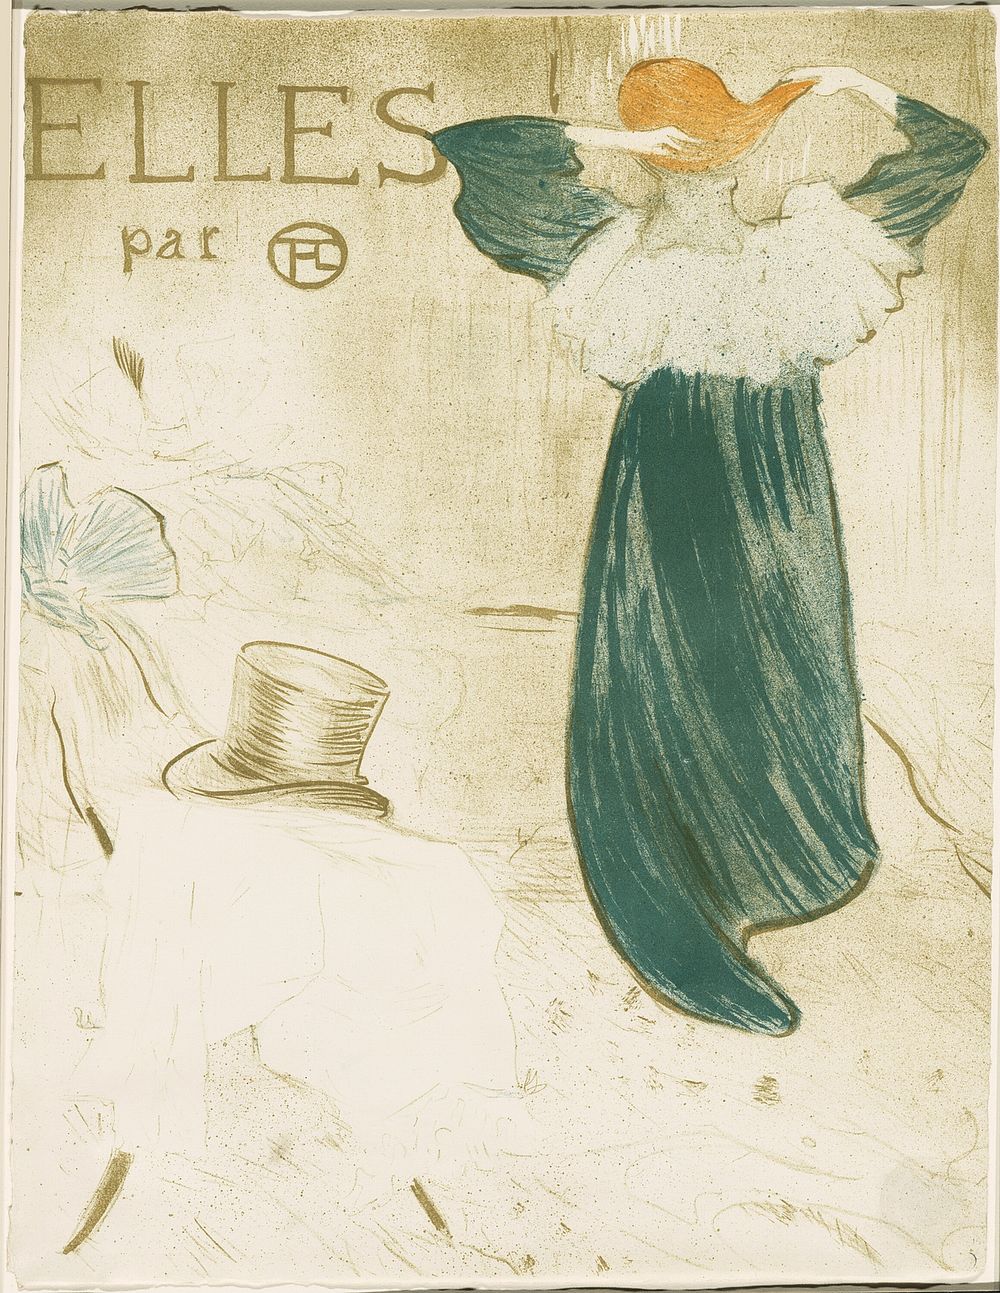 Frontispiece, from Elles by Henri de Toulouse-Lautrec